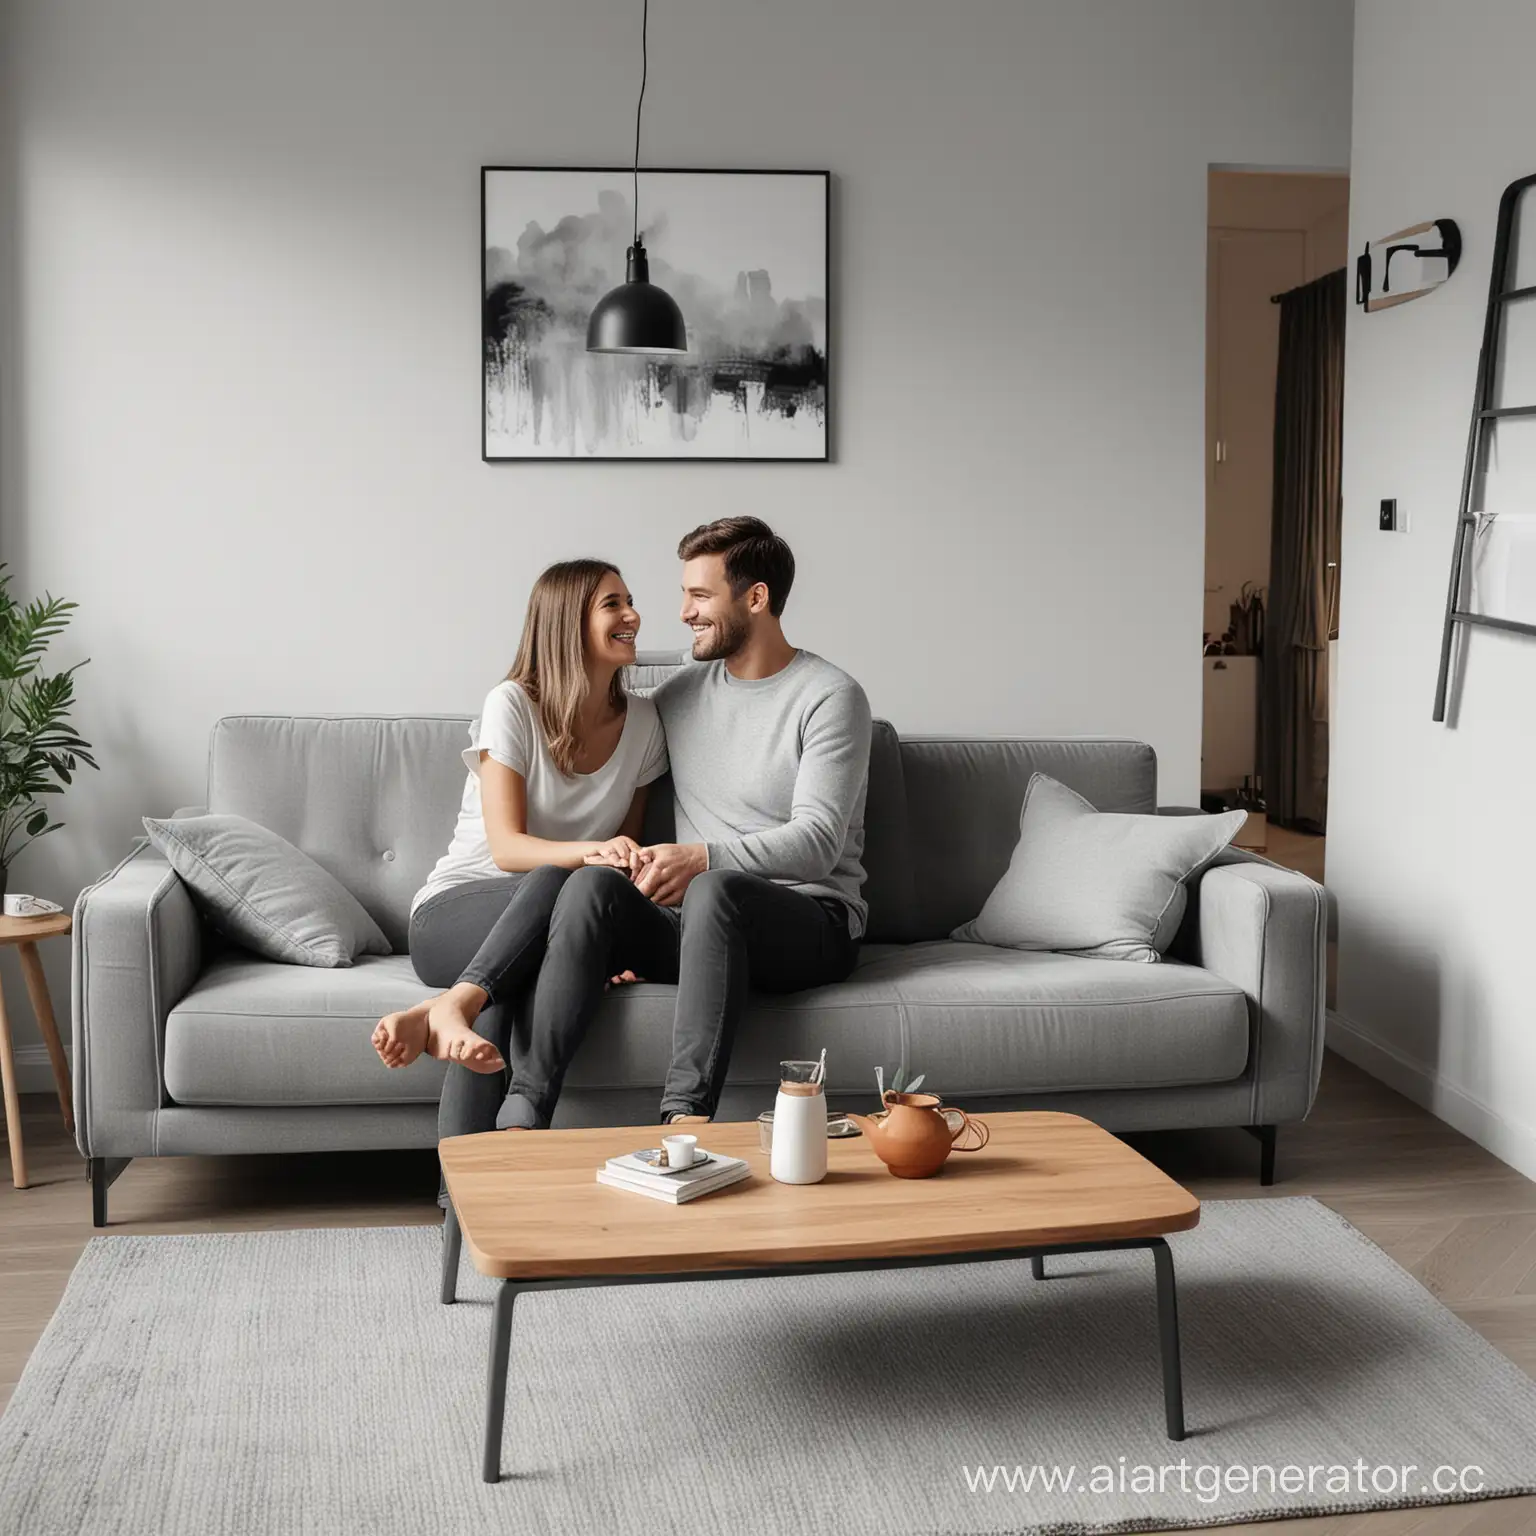 Сгенерируй дизайн квартиры в серых тонах где на диване сидит счастливая пара 